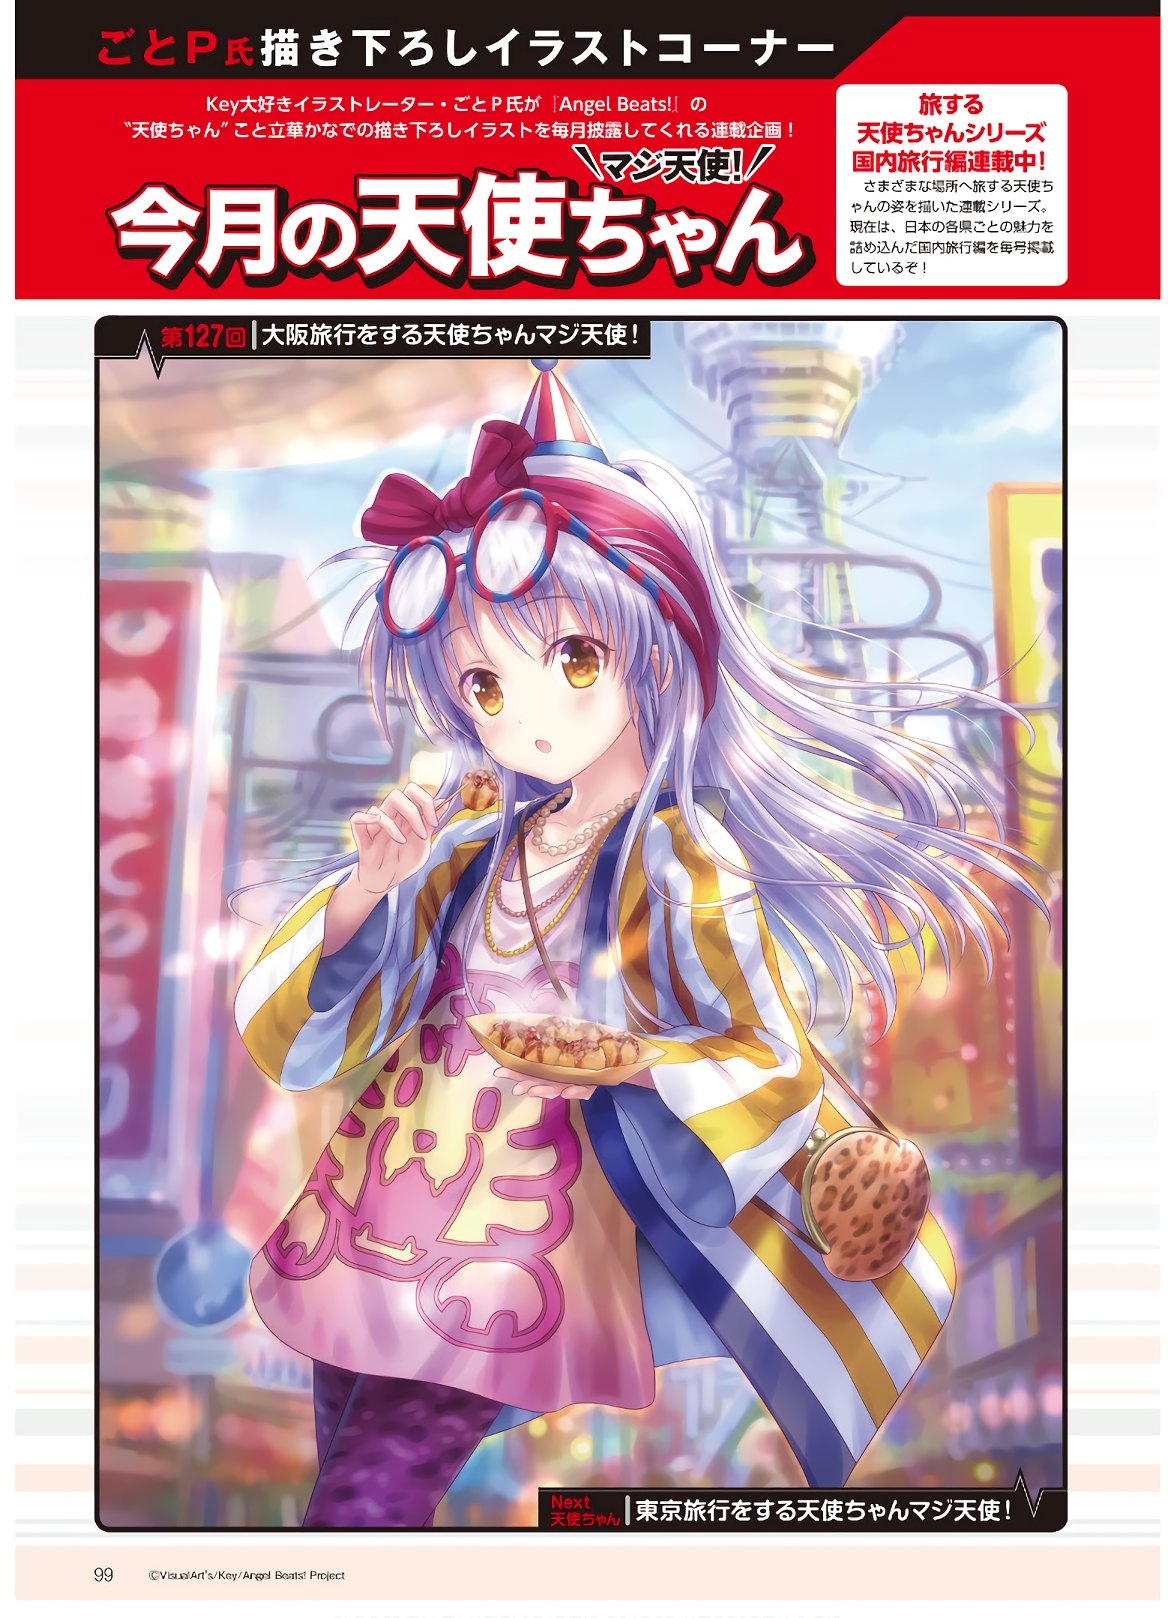 Dengeki G's Magazine #286 - May 2021 96